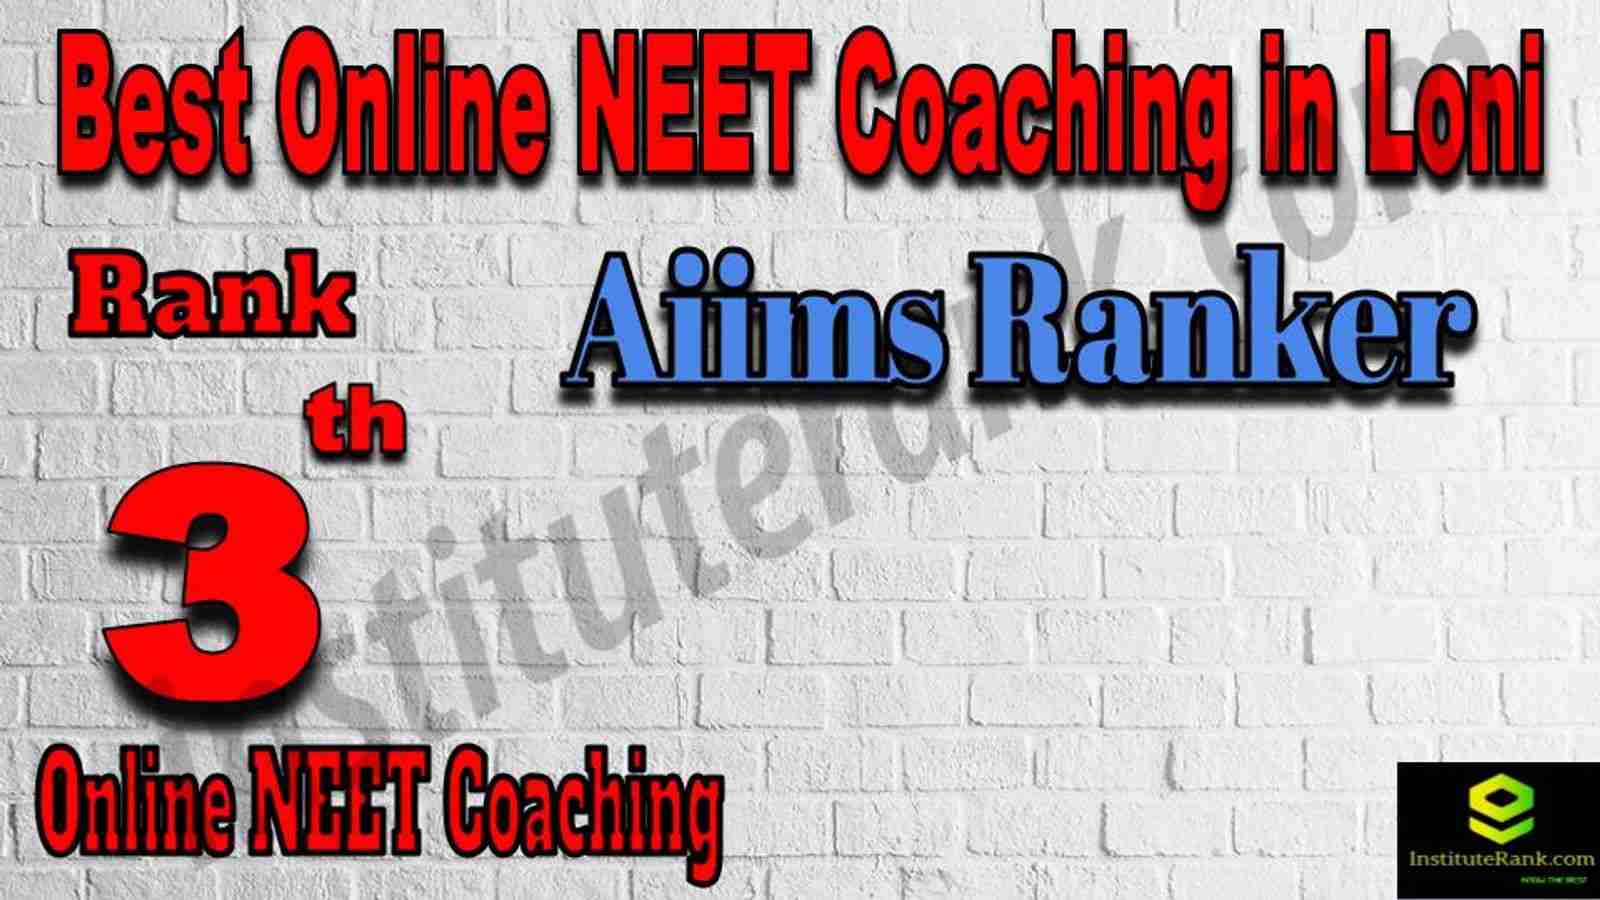 Rank 3 Best Online NEET Coaching in Loni